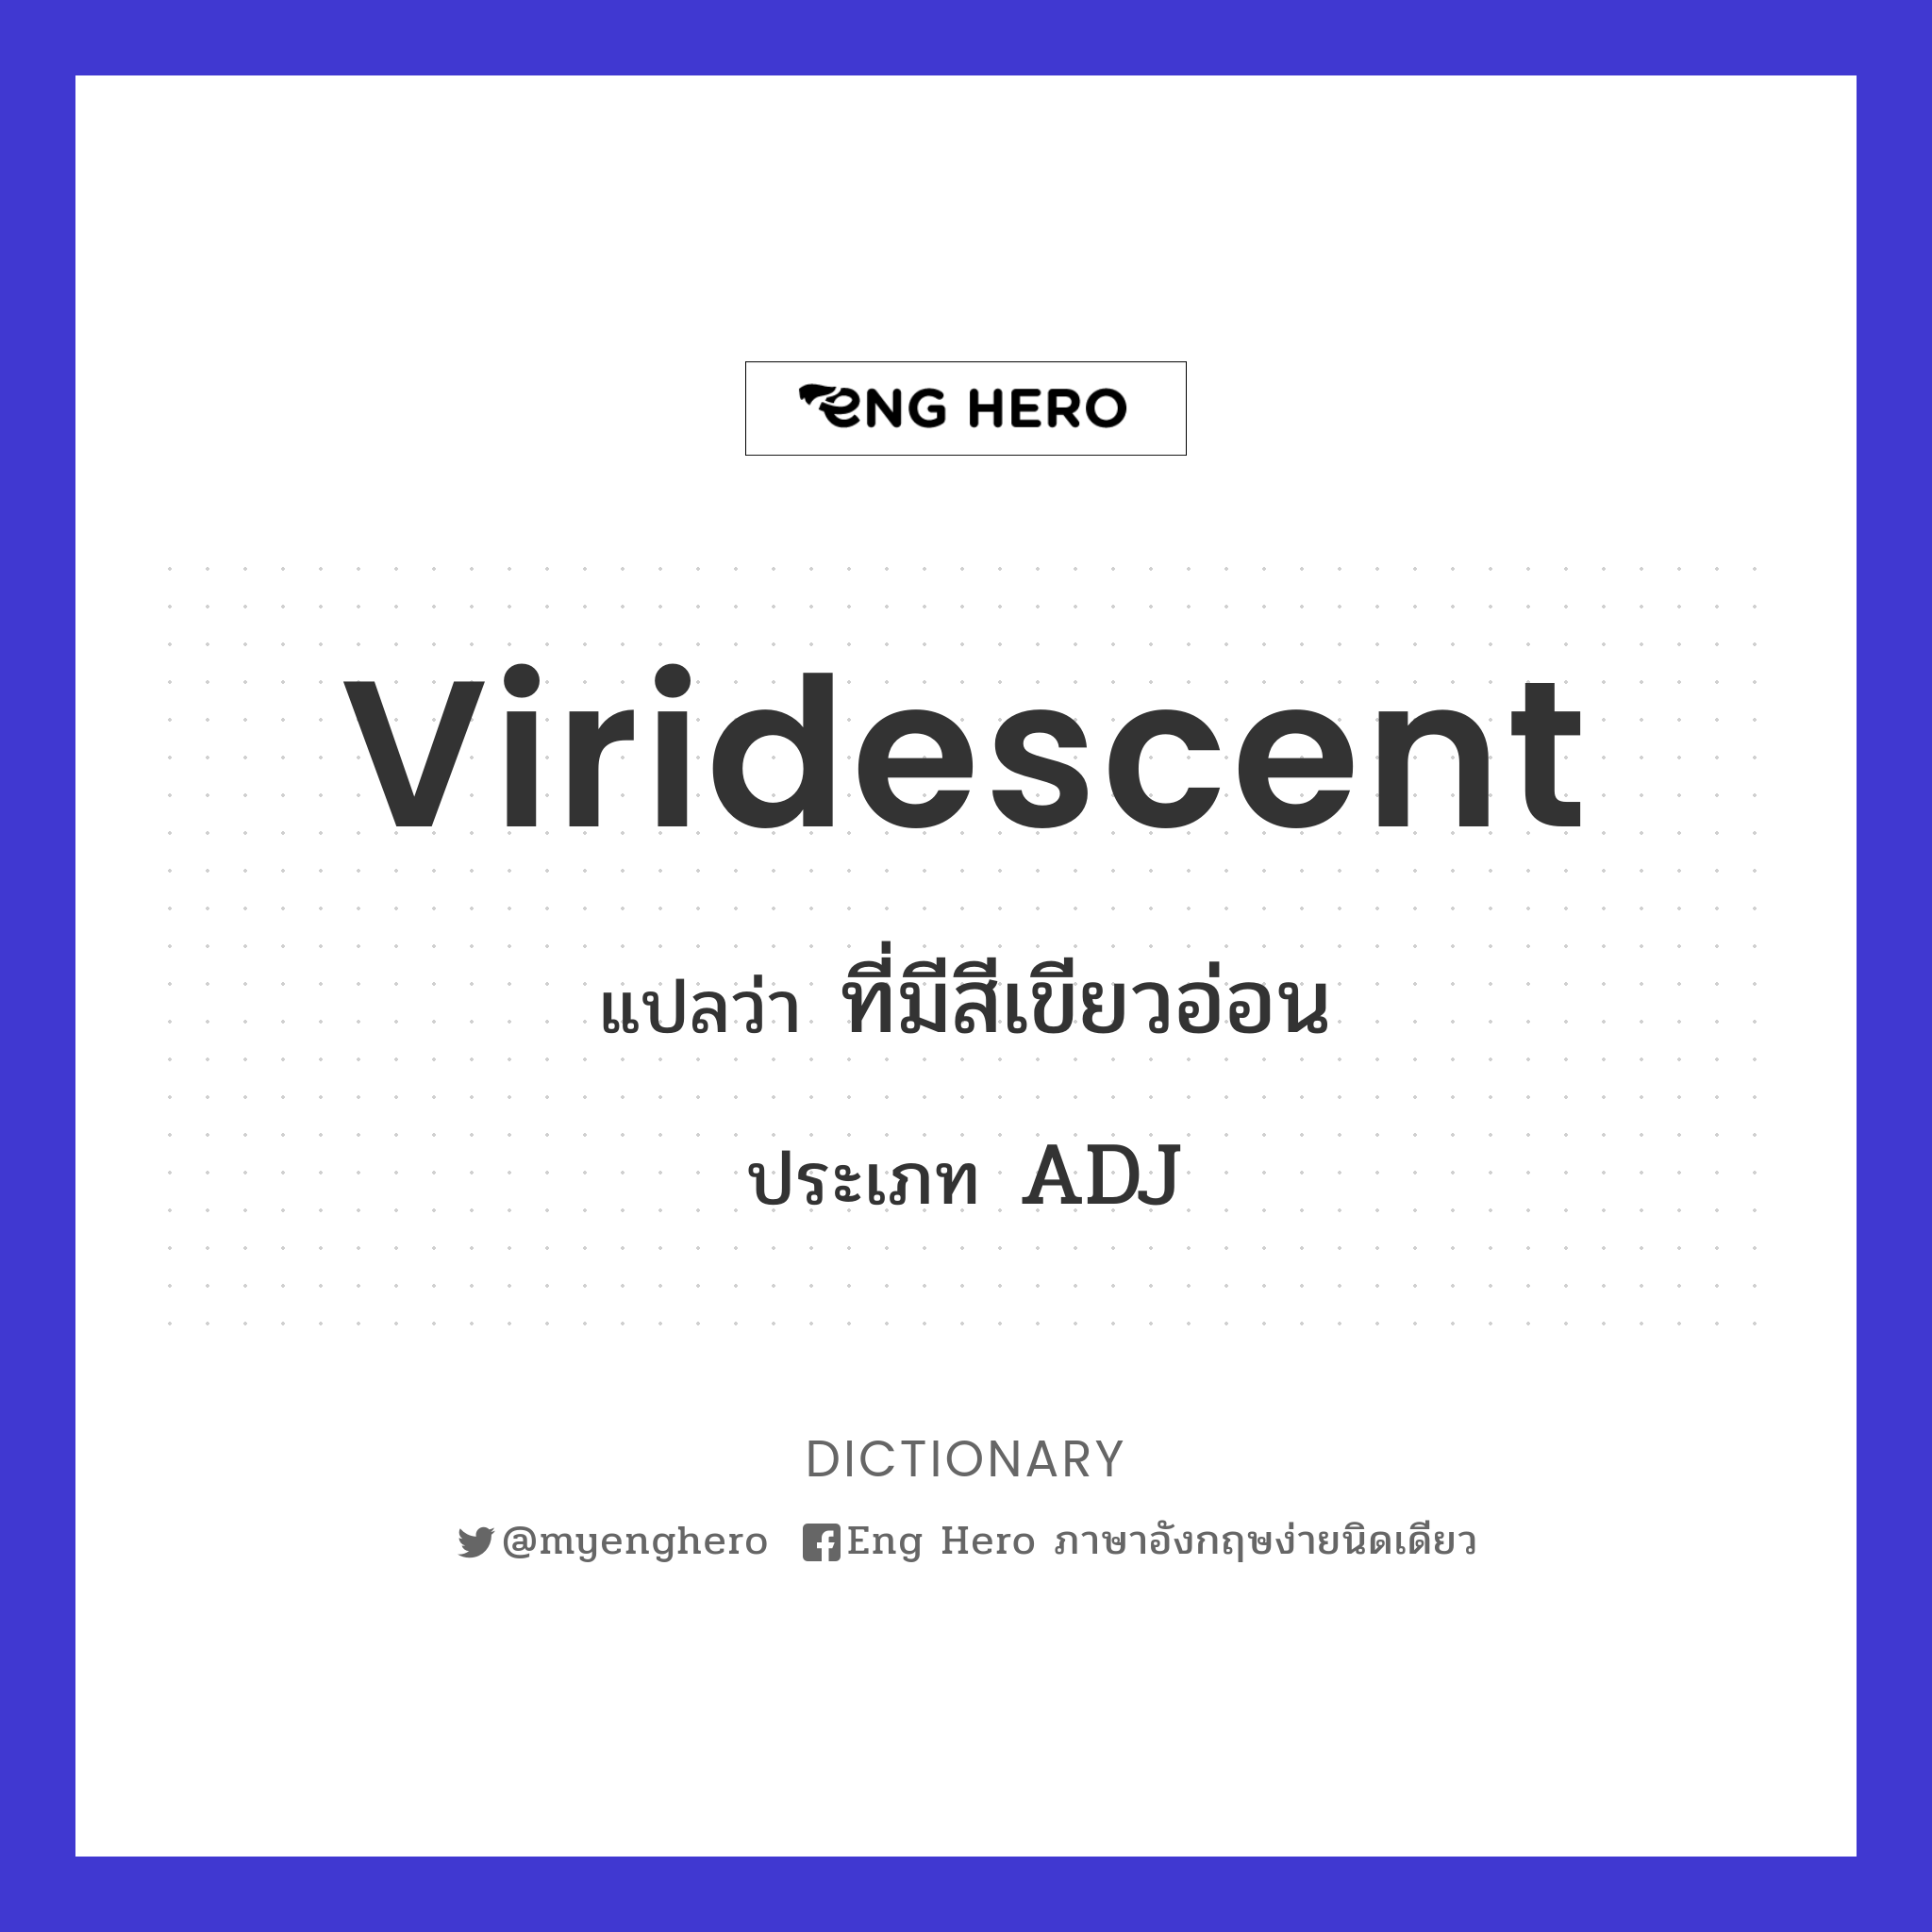 Viridescent แปลว่า ที่มีสีเขียวอ่อน | Eng Hero เรียนภาษาอังกฤษ ออนไลน์ ฟรี